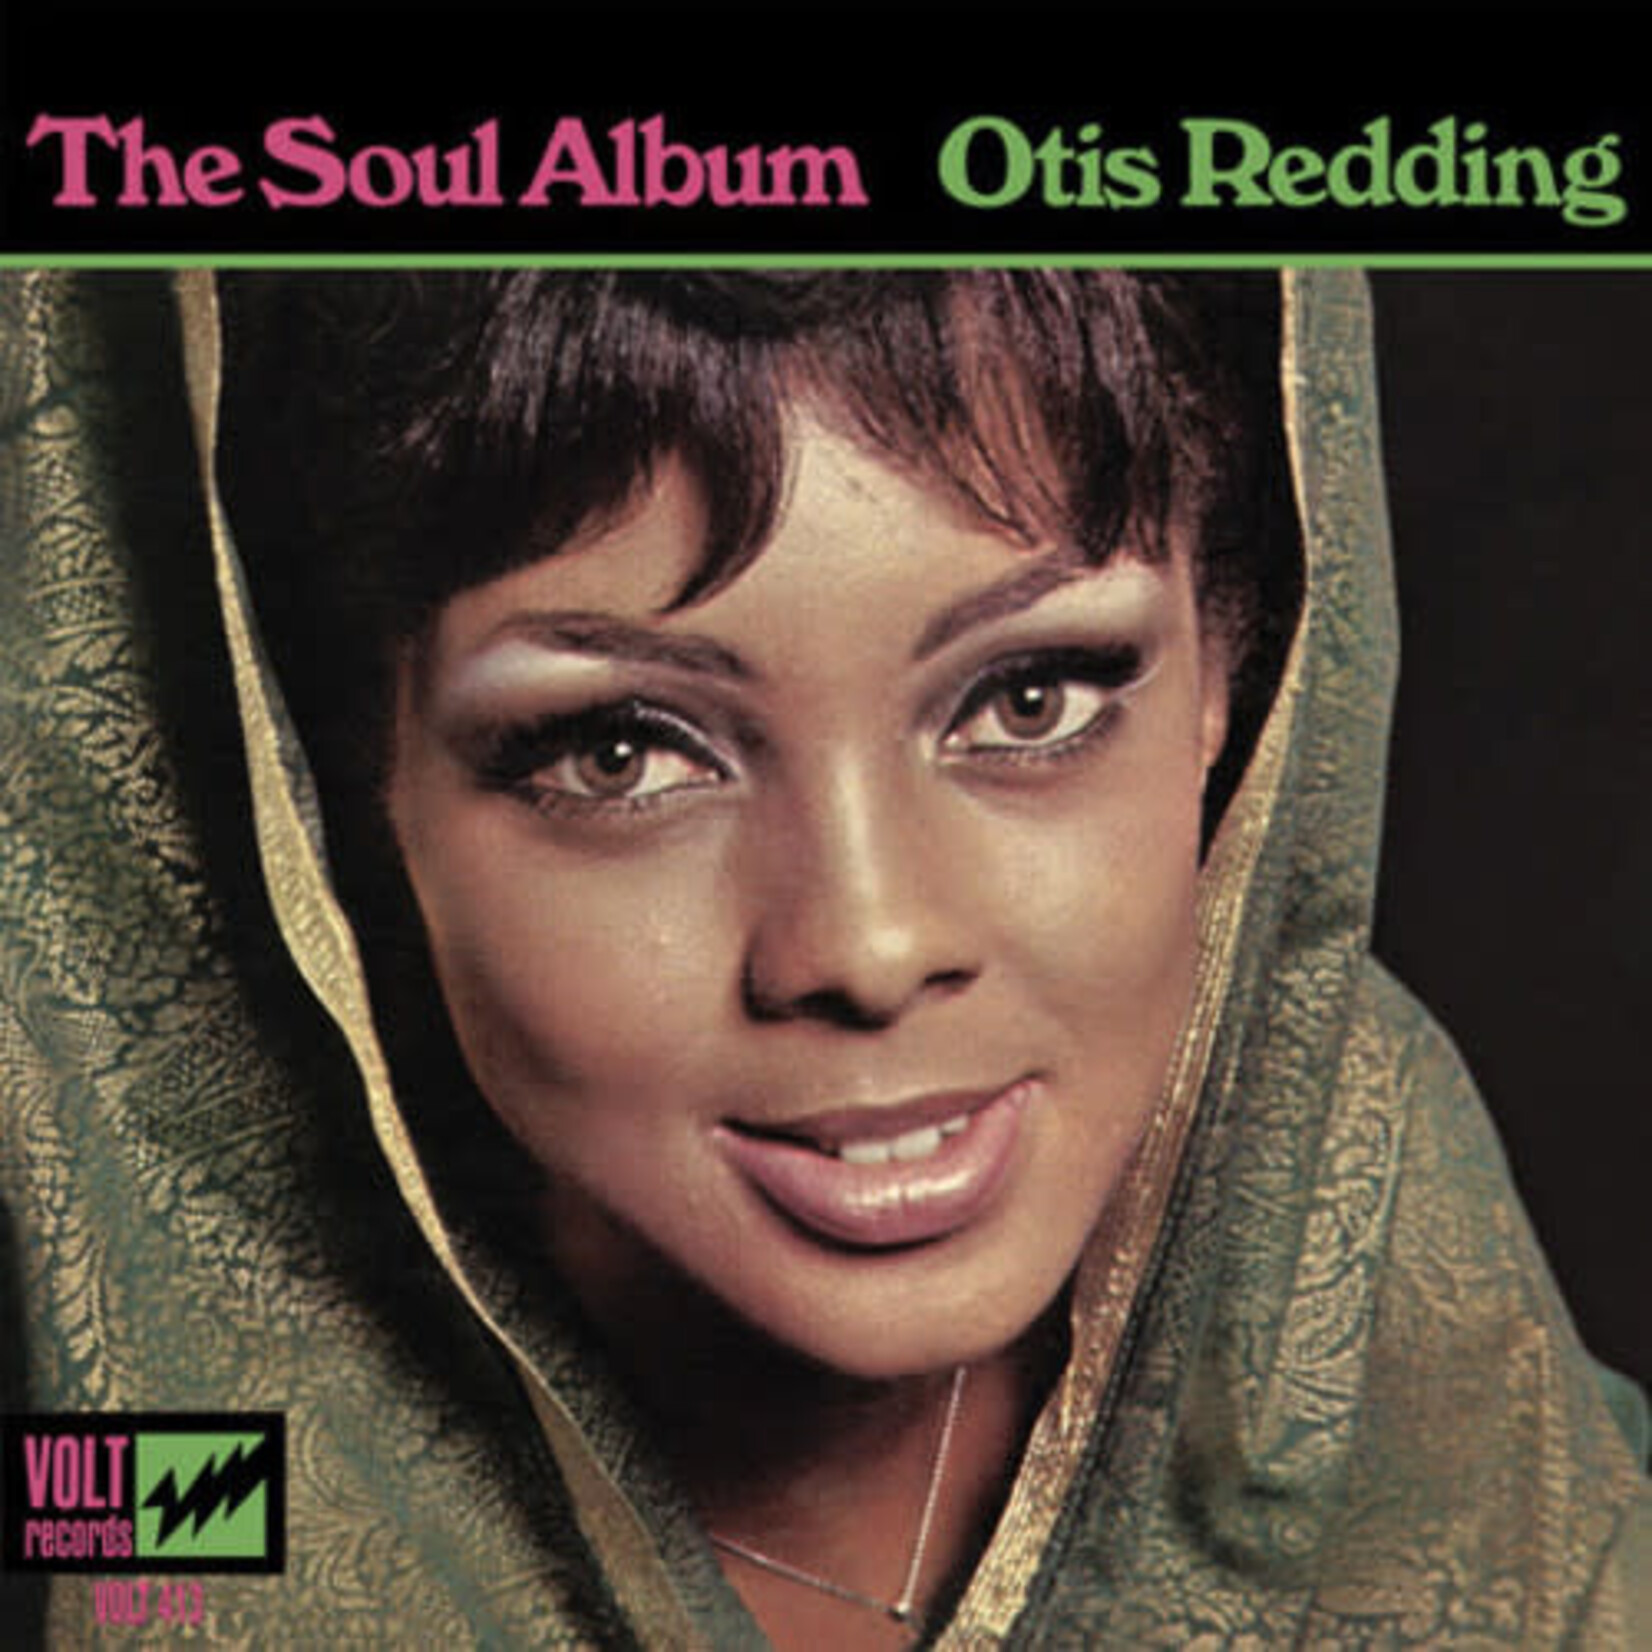 Atlantic Otis Redding - The Soul Album (LP)